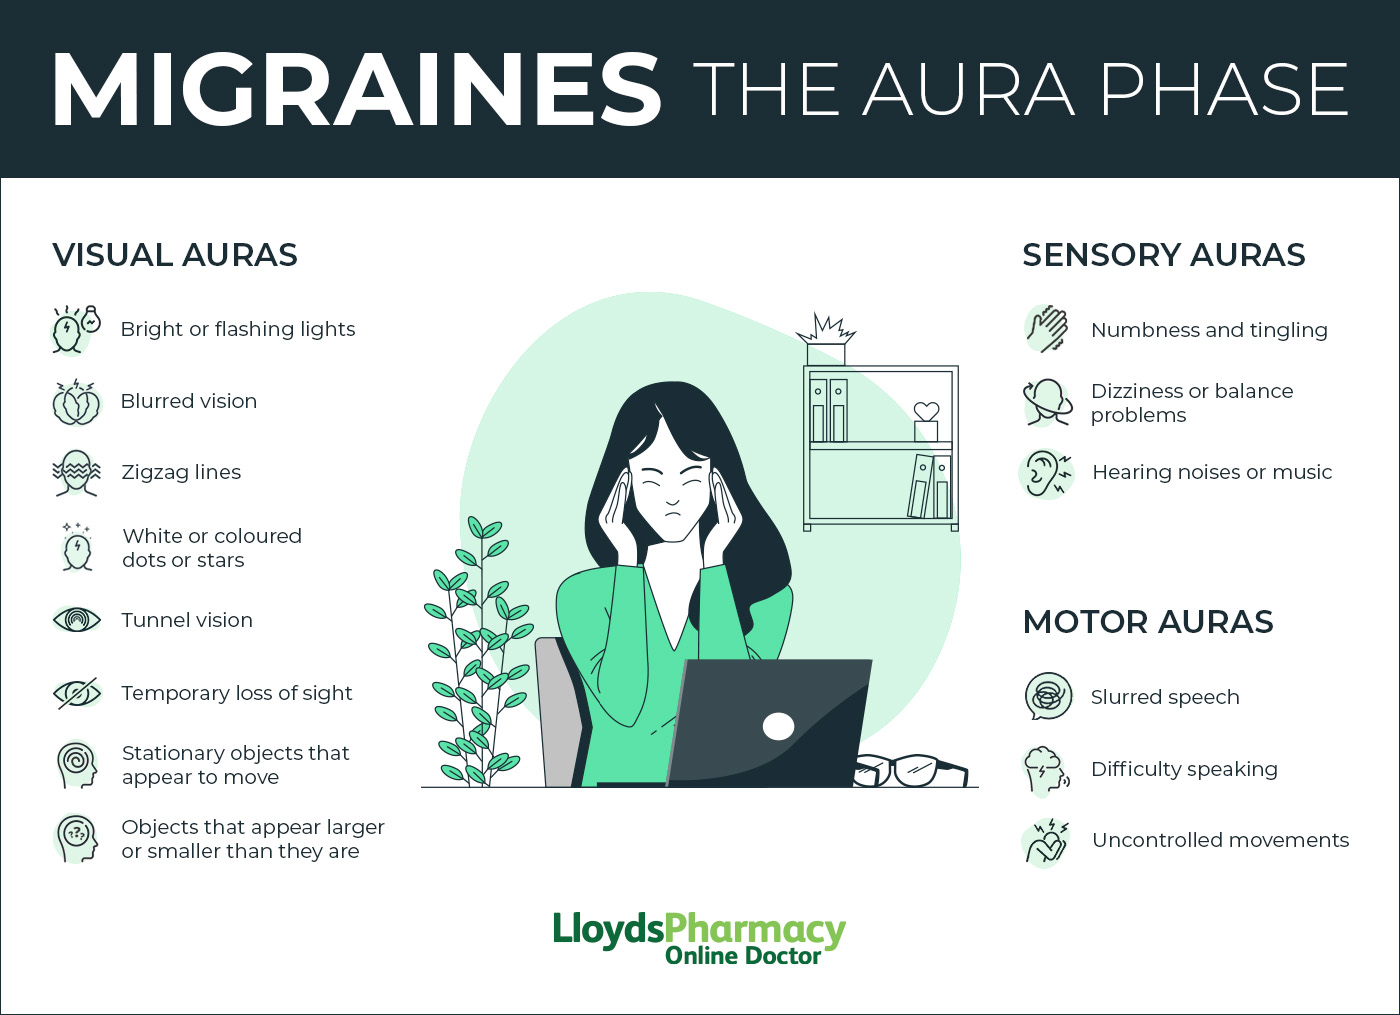 Migraine - the aura phase